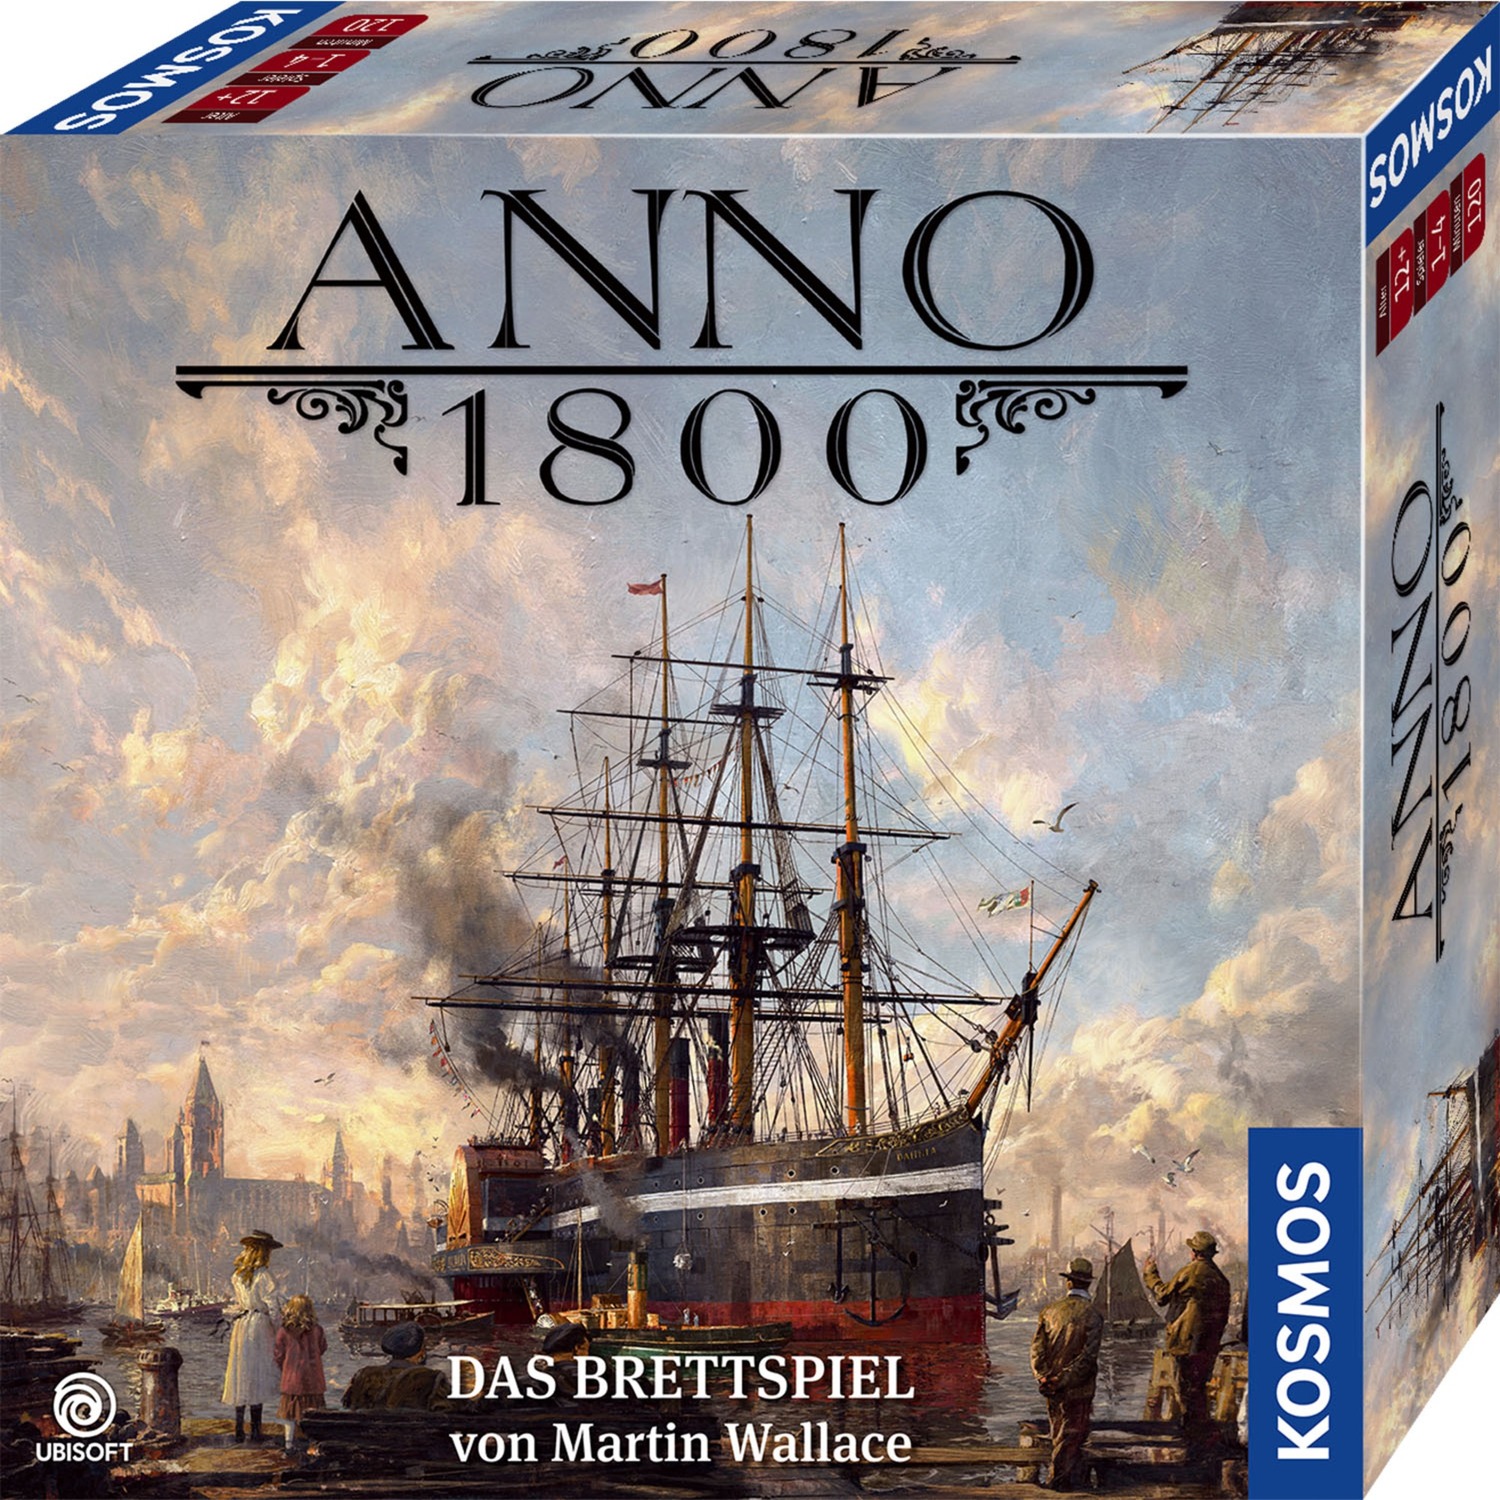 Image of Alternate - Anno 1800, Brettspiel online einkaufen bei Alternate